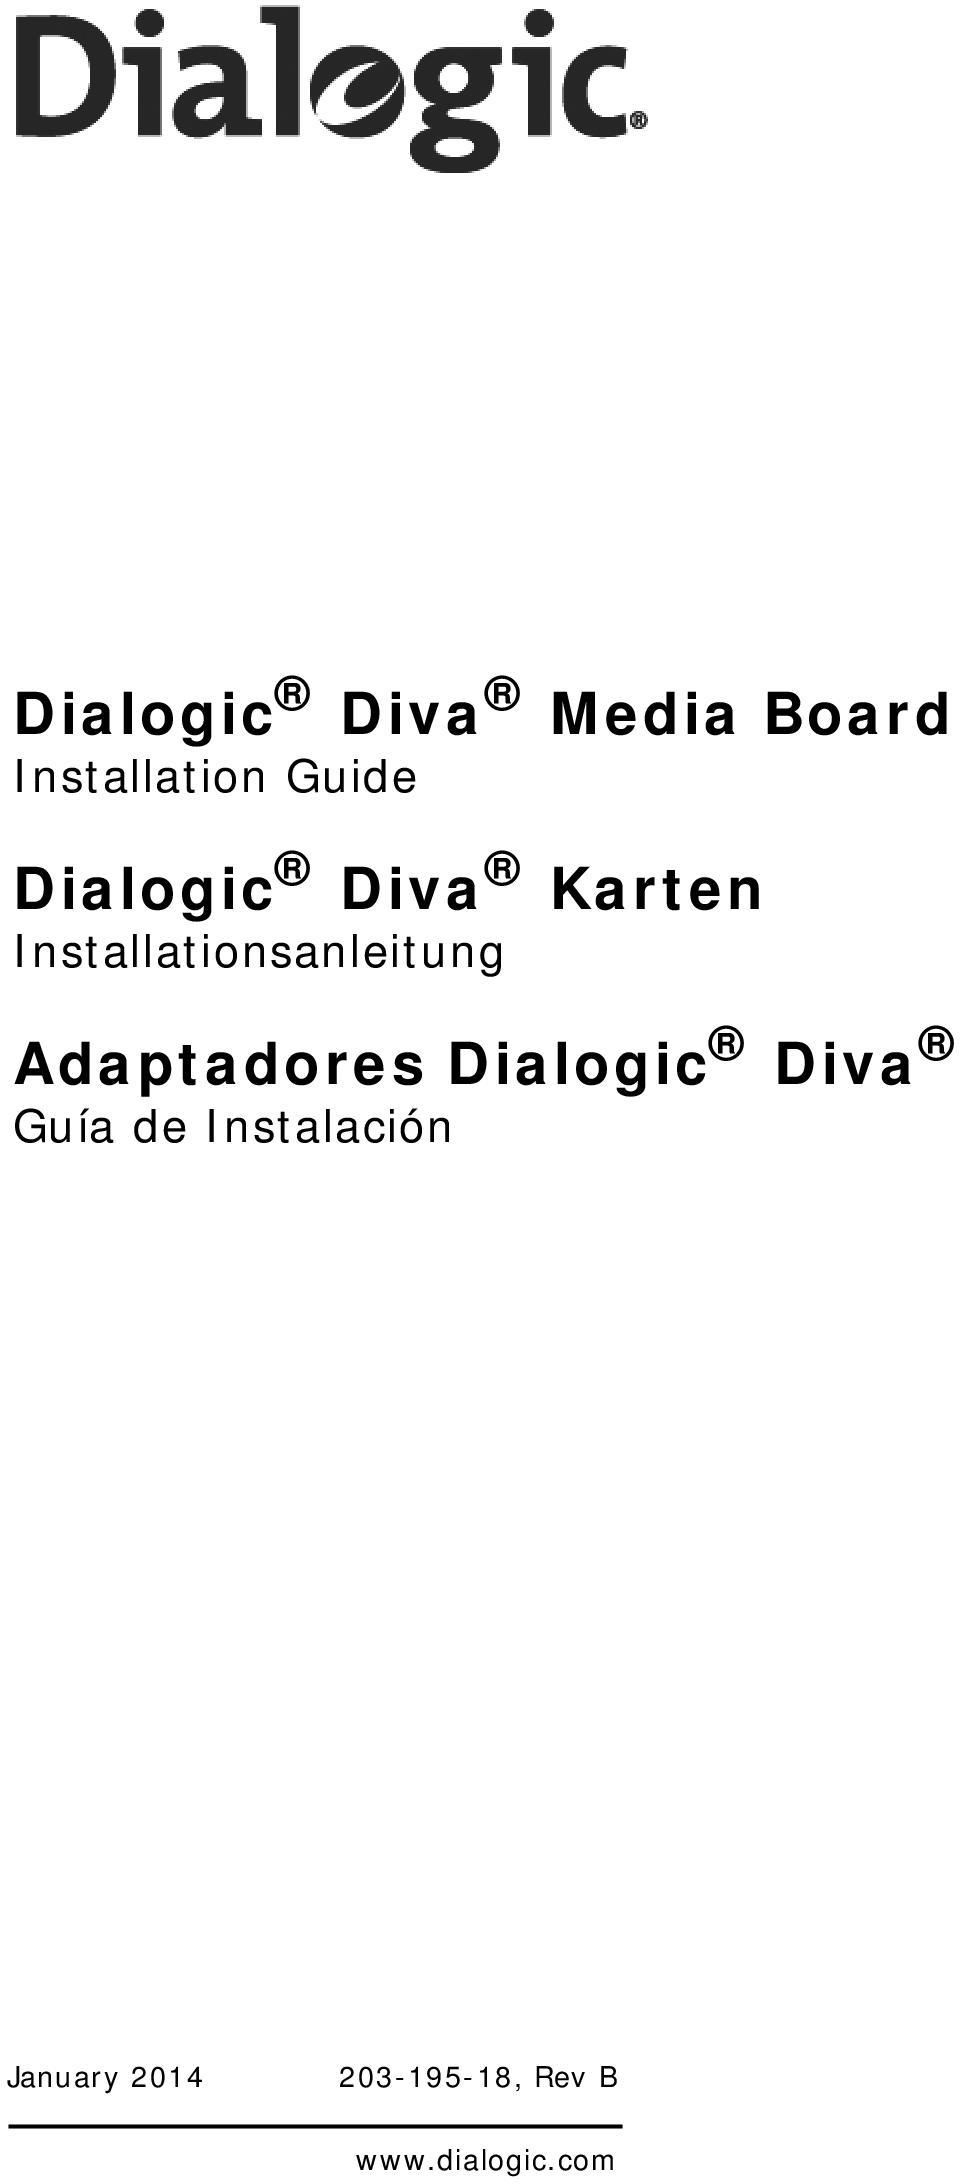 Adaptadores Dialogic Diva Guía de Instalación